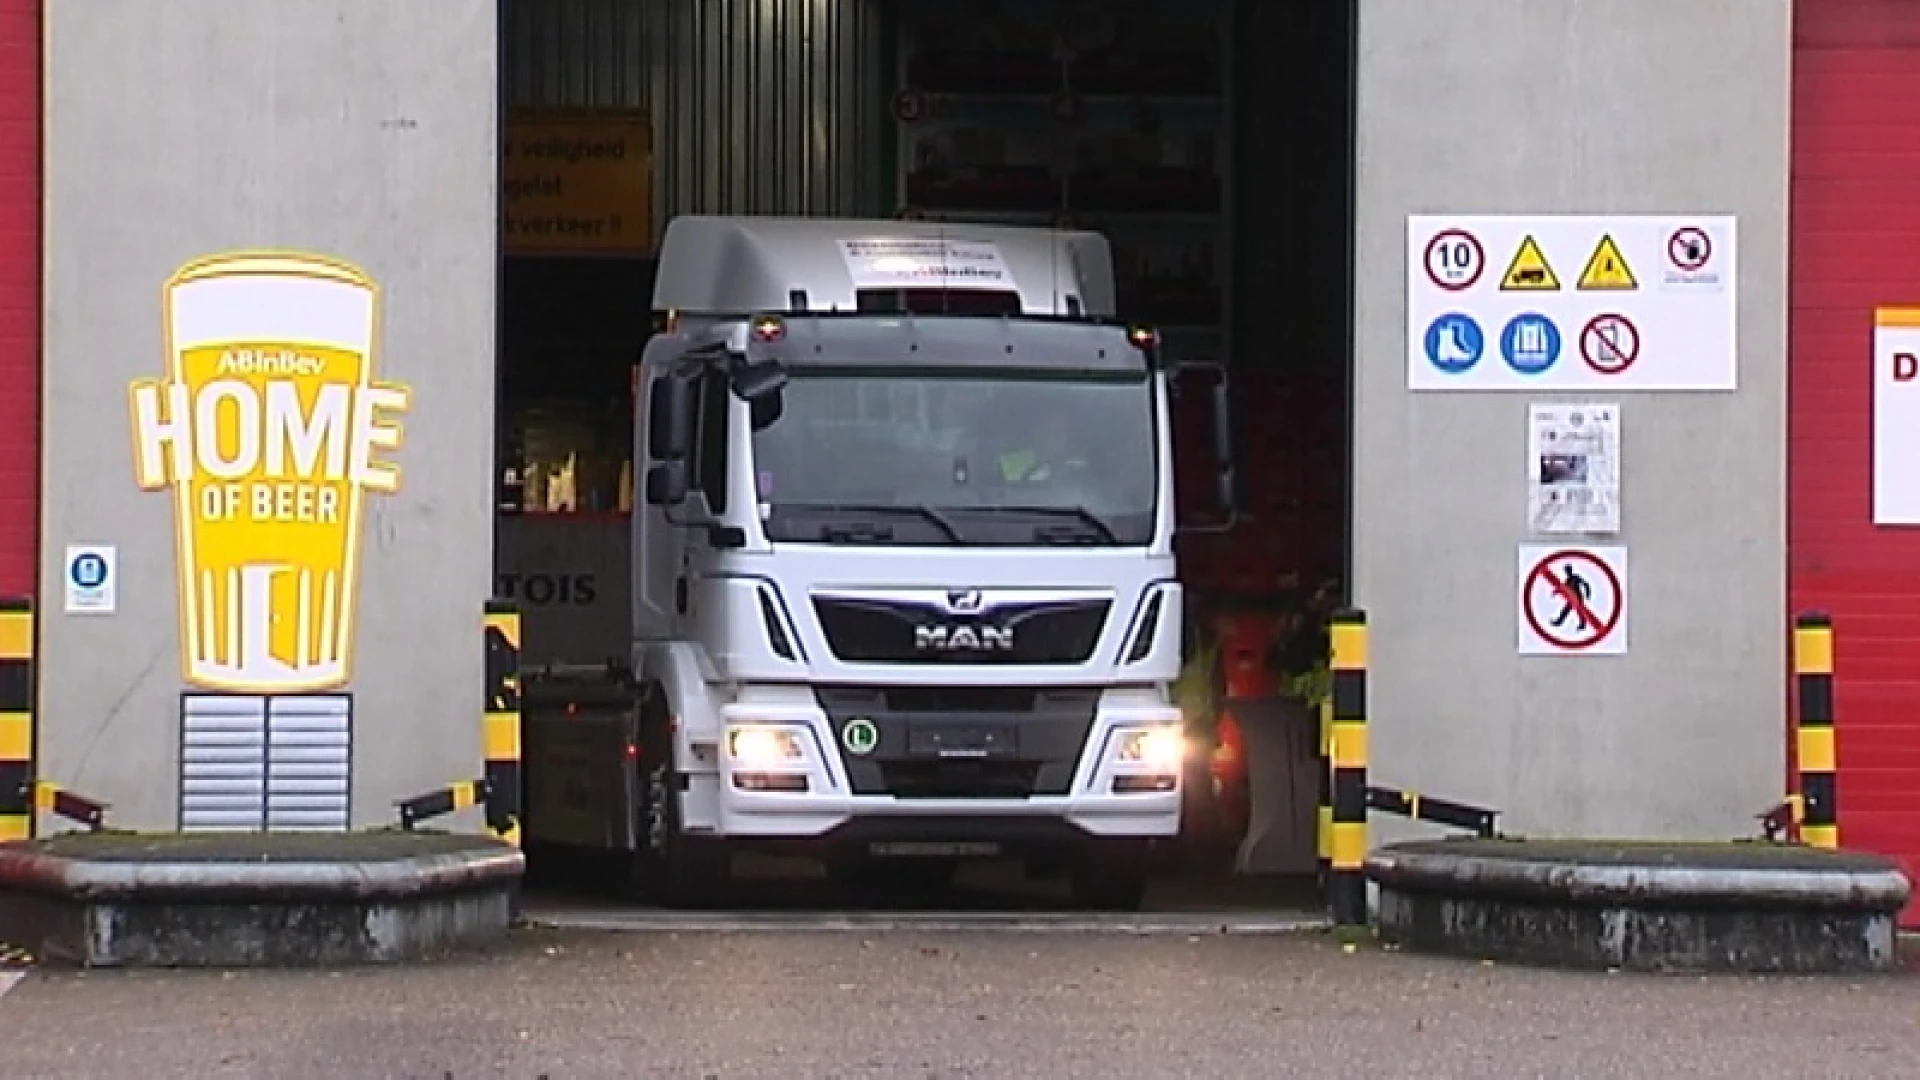 Primeur in België: AB Inbev gaat pintjes leveren met elektrische vrachtwagen